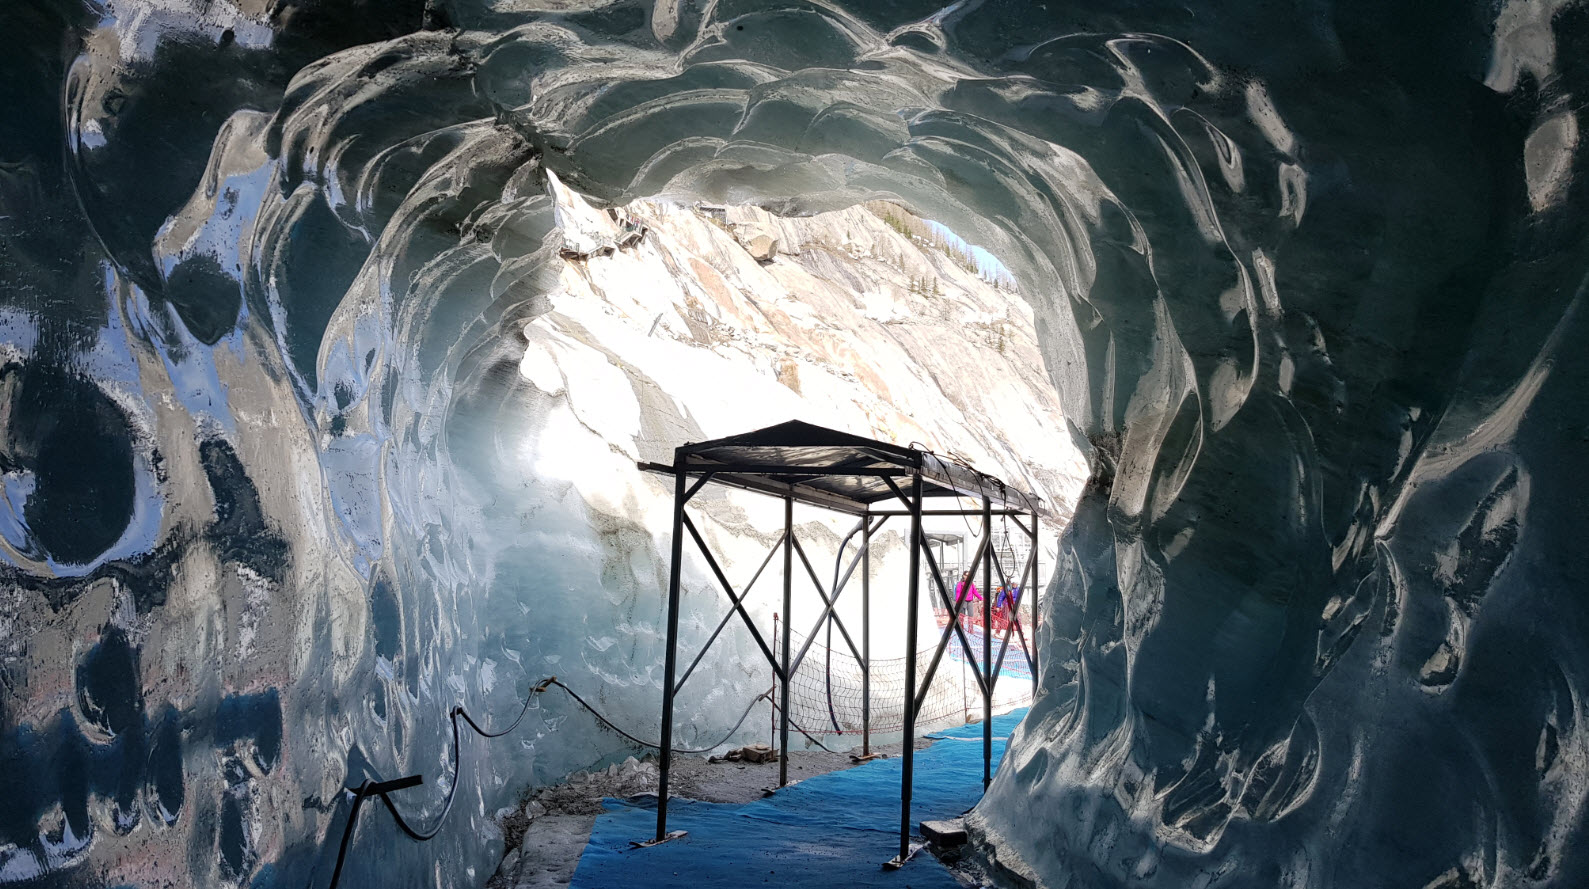 Grotte de Glace Chamonix